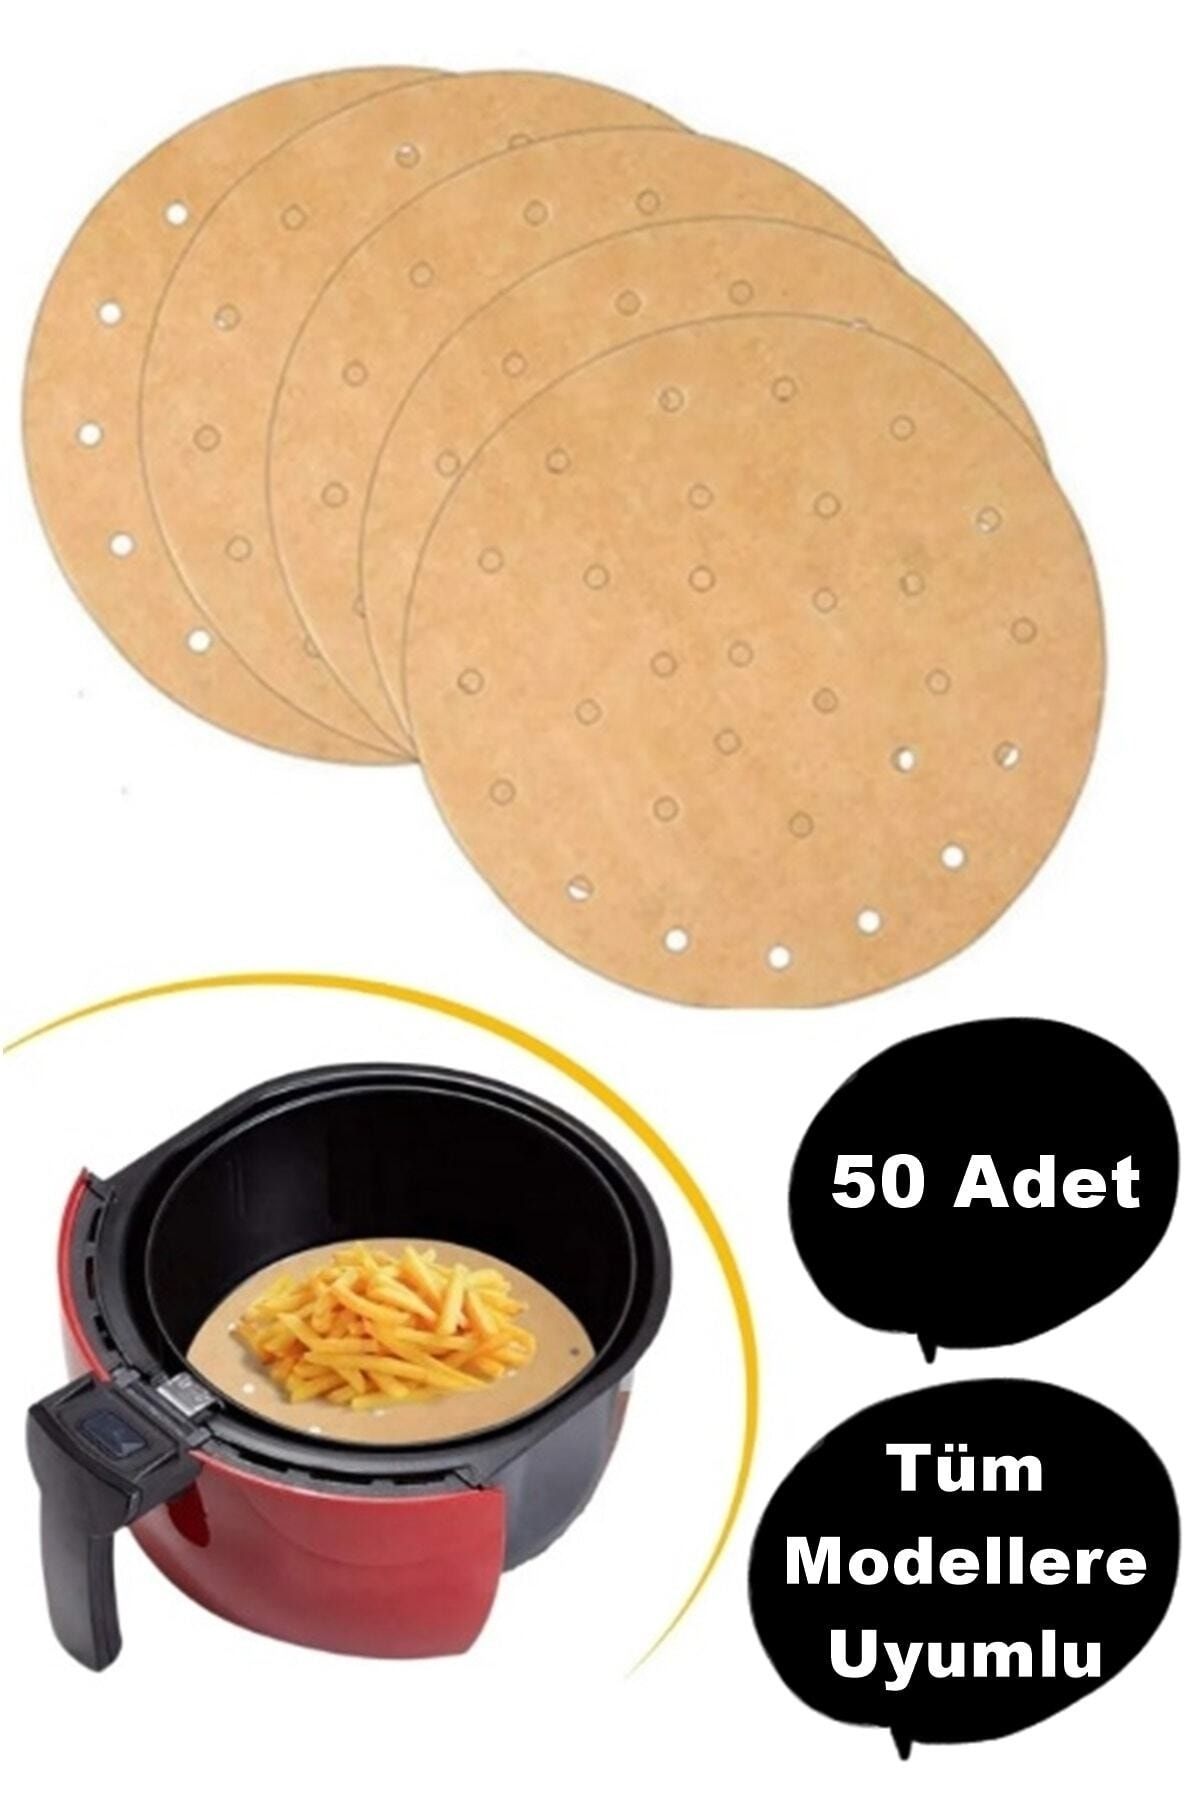 MUTLUHOME 50 Adet Air Fryer Pişirme Kağıdı Tek Kullanımlık Yağ Geçirmez Kağıt Yuvarlak Delikli Model Airfryer